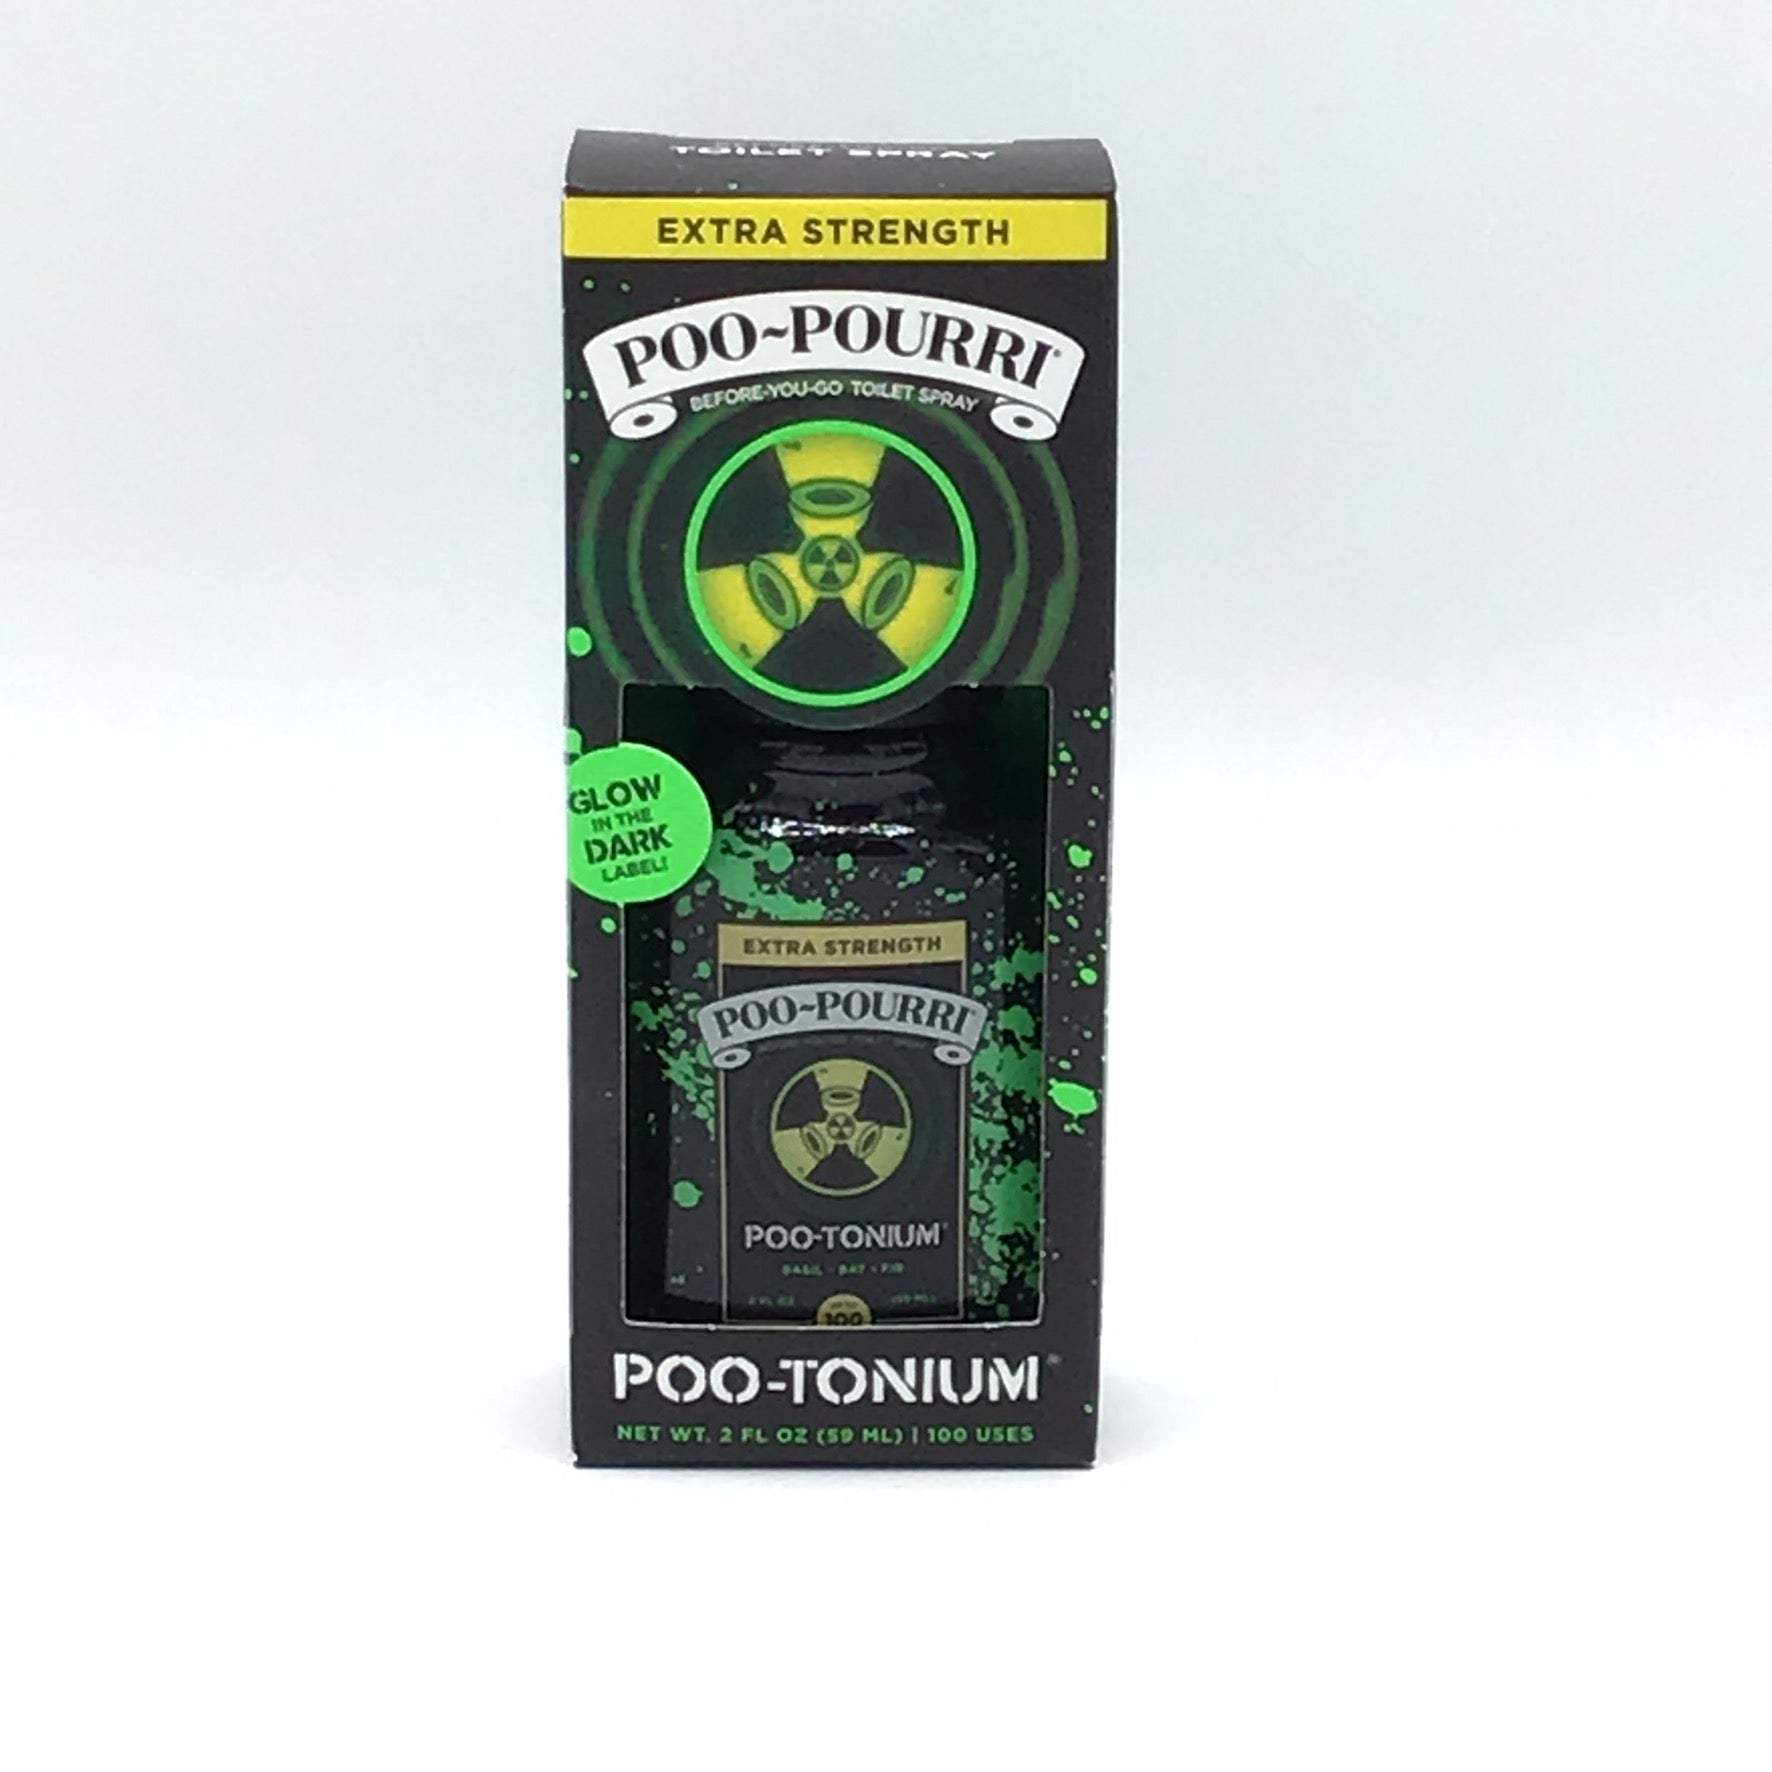 Poo-Pourri Extra Strength